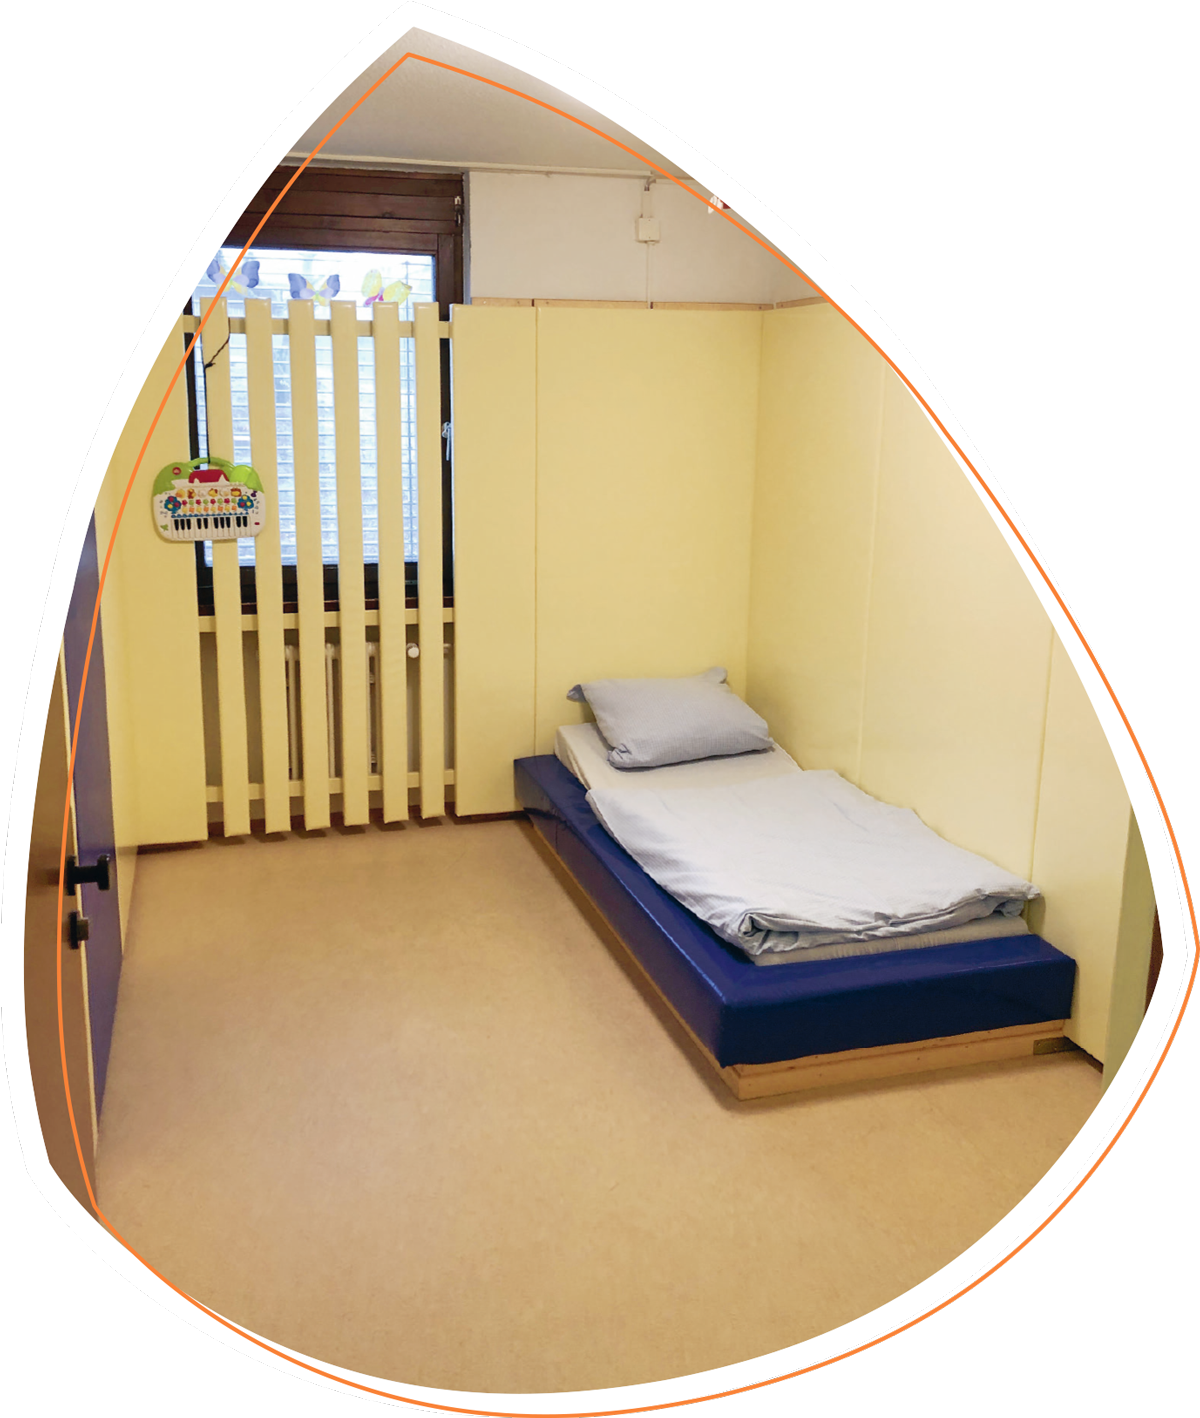 In Adeas Zimmer steht in der rechten Ecke ein Bett. Ansonsten sind keine Einrichtungsgegenstände zu erkennen. Das Bett und die cremefarbigen Wände sind dick gepolstert.